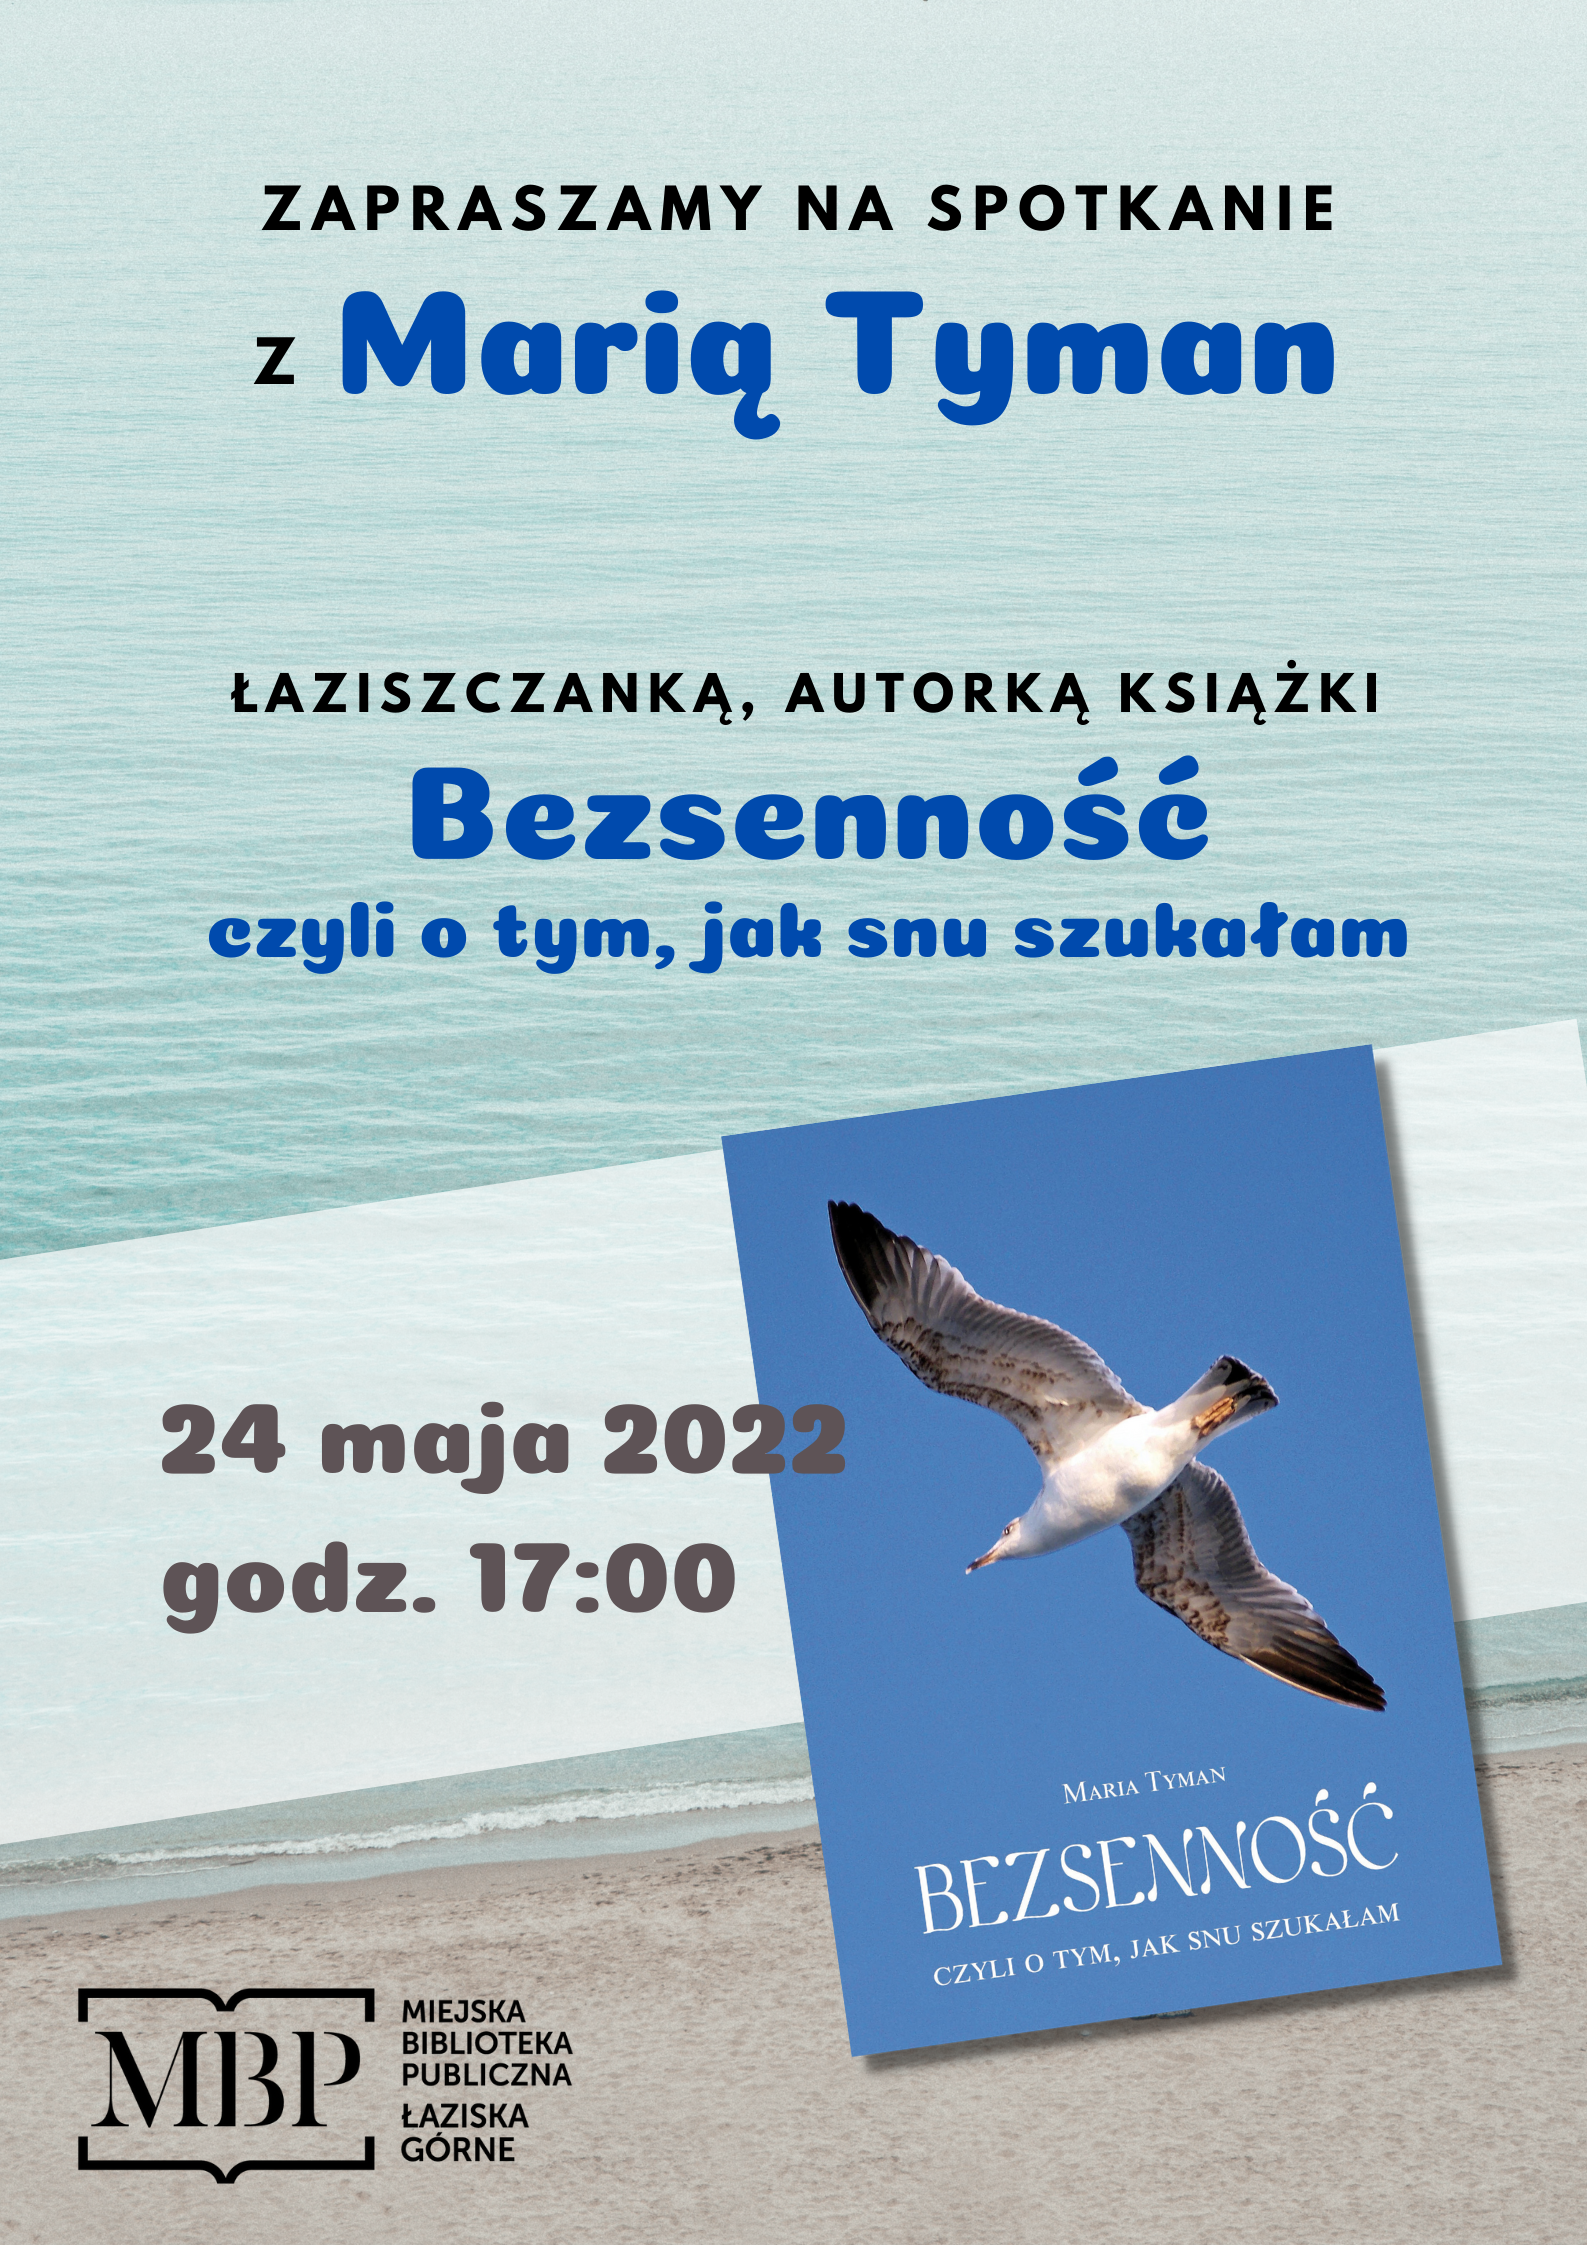 Spotkanie z Marią Tyman, autorką książki Bezsenność. 24 maja, godz. 17:00